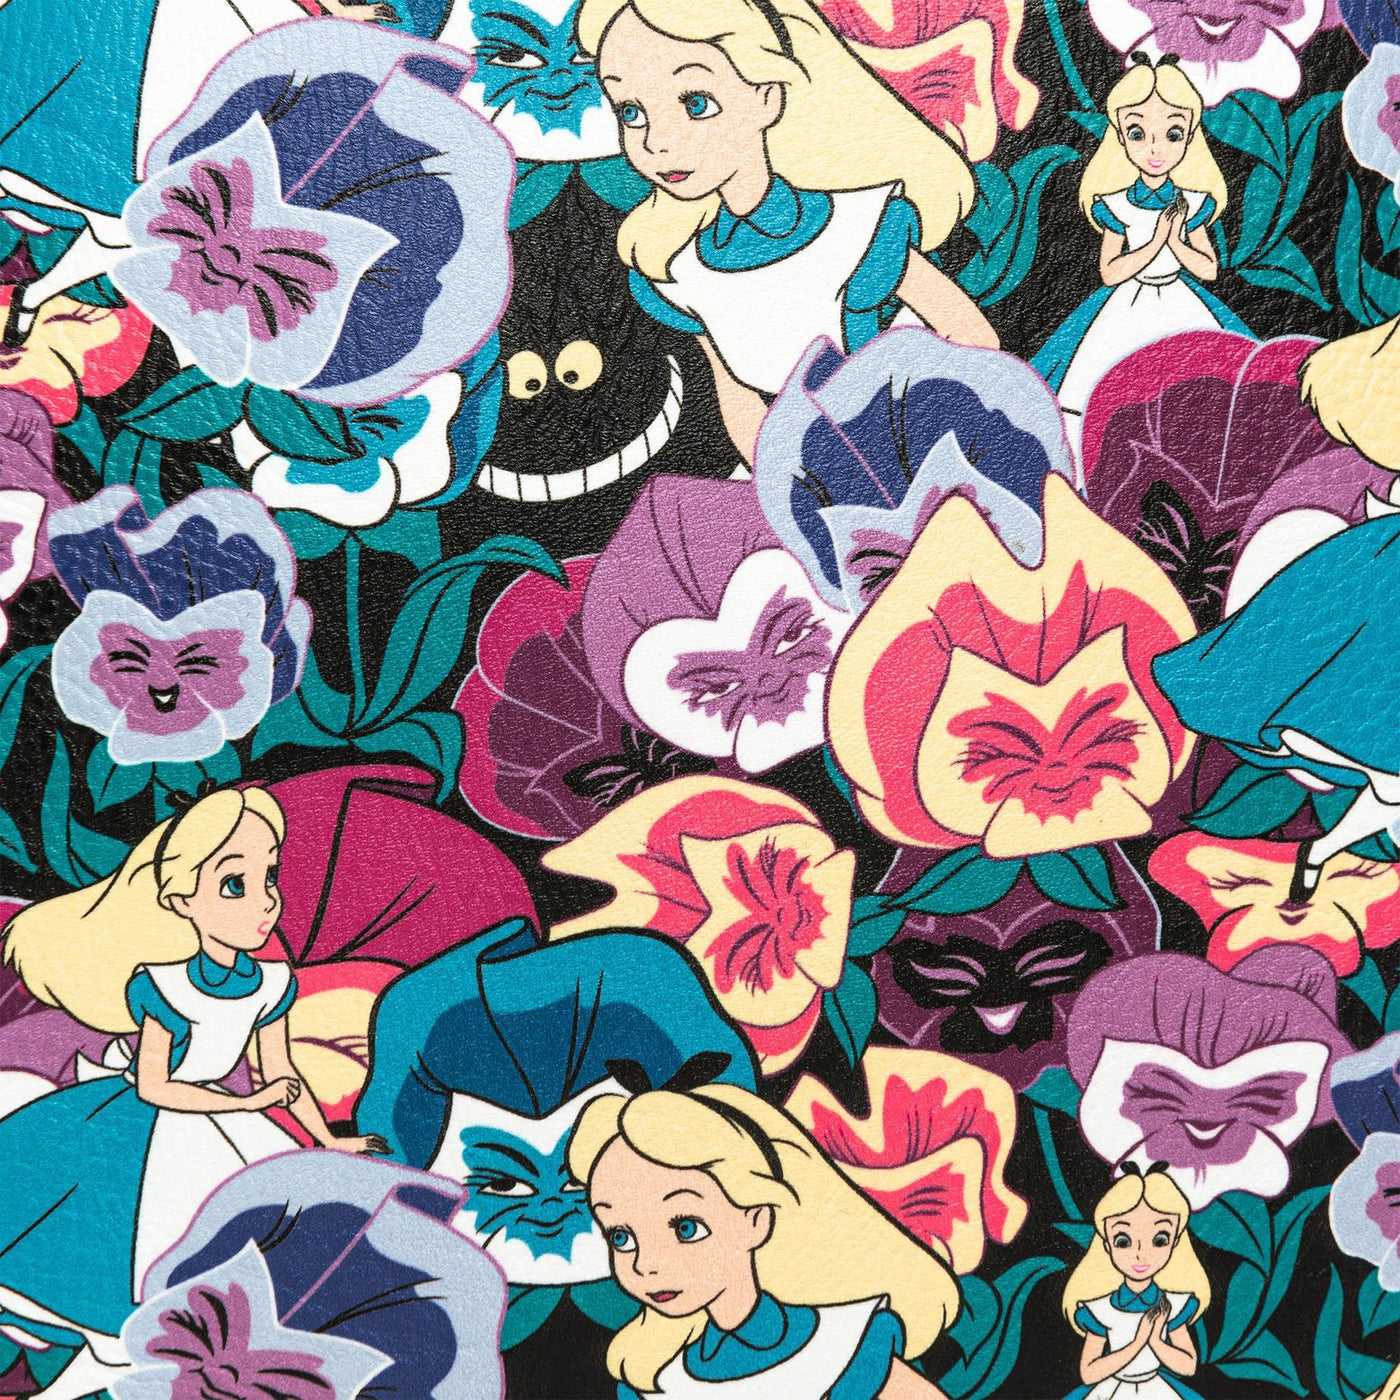 707 Street Loungefly Exclusive Disney Alice in Wonderland Wildflowers Mini Backpack - Print